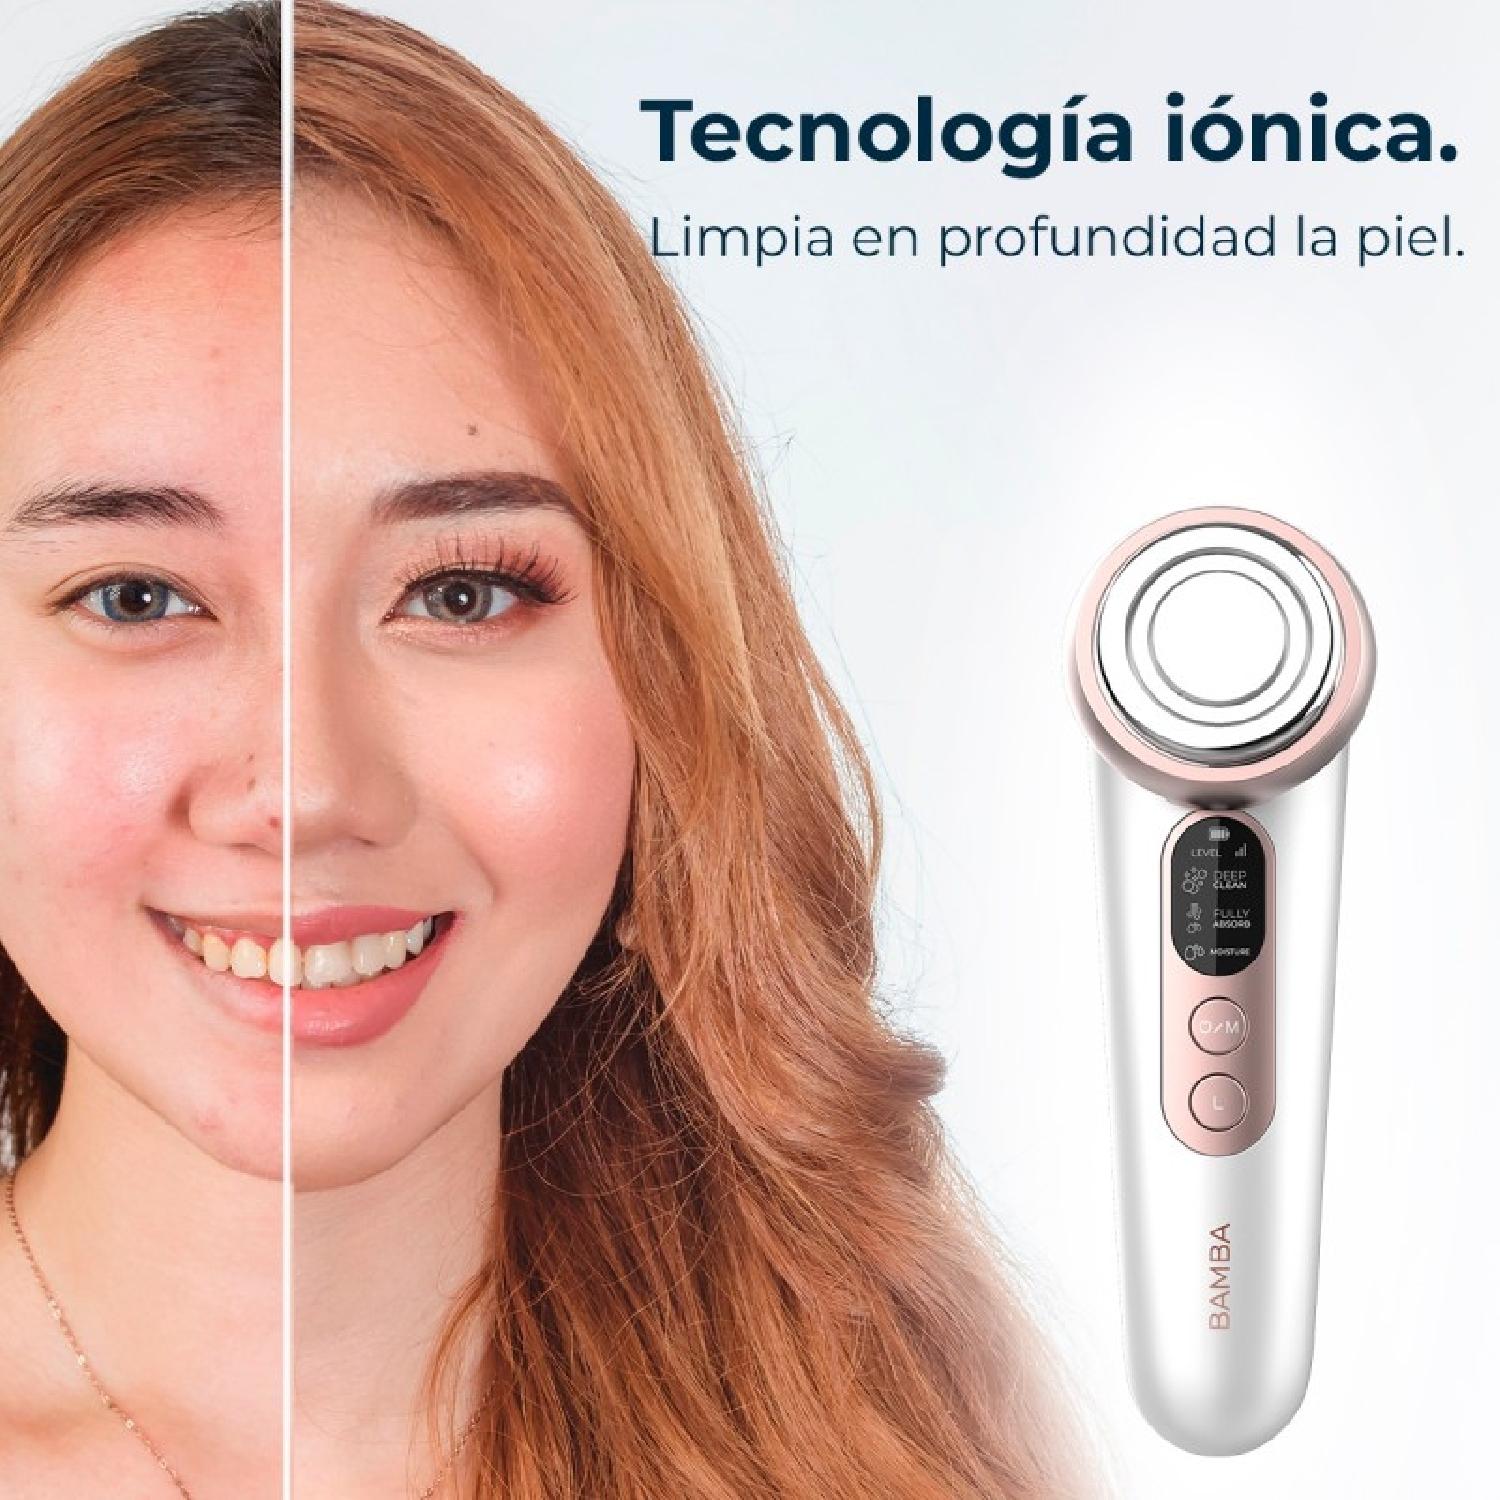 Masajeador facial Bamba FaceCare LightSonic, 3 Modos, Tecnología Iónica, Tecnolo